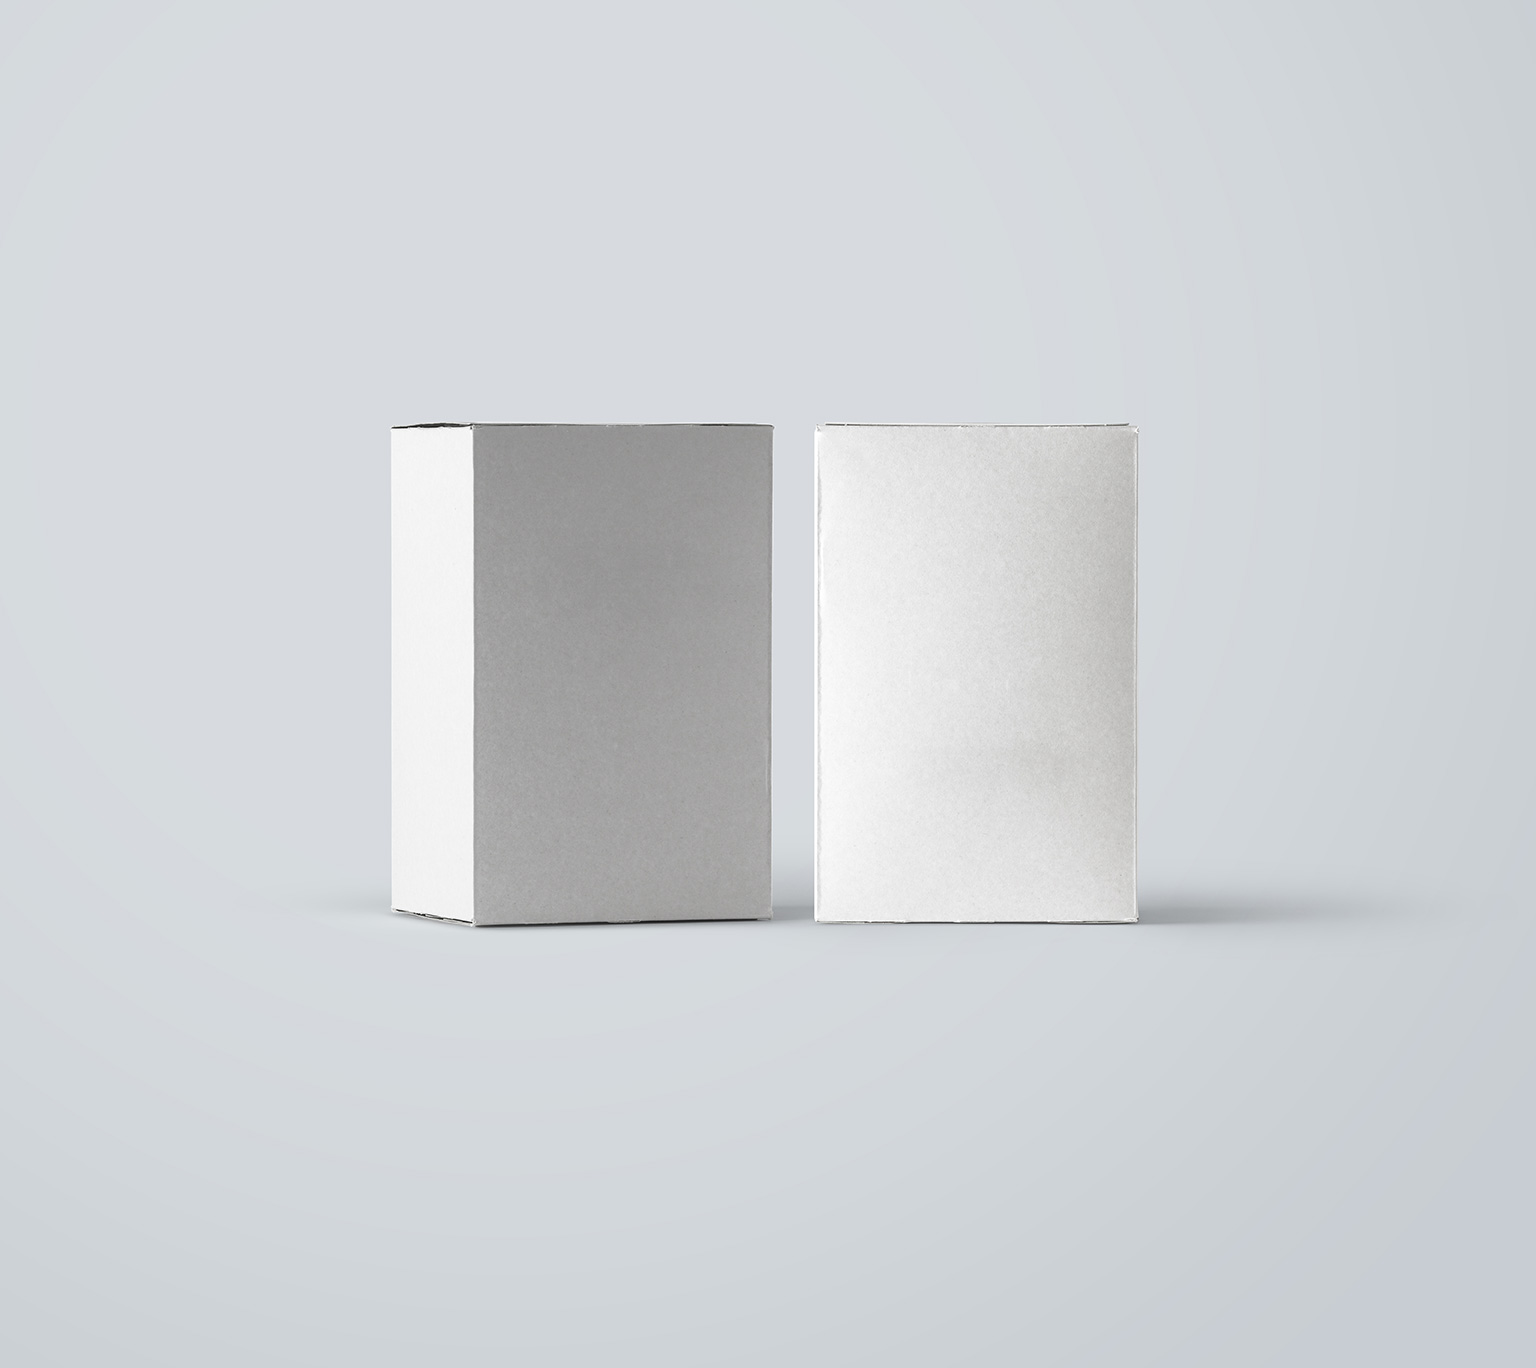 长方形包装盒产品包装提案展示PSD模板 Packaging